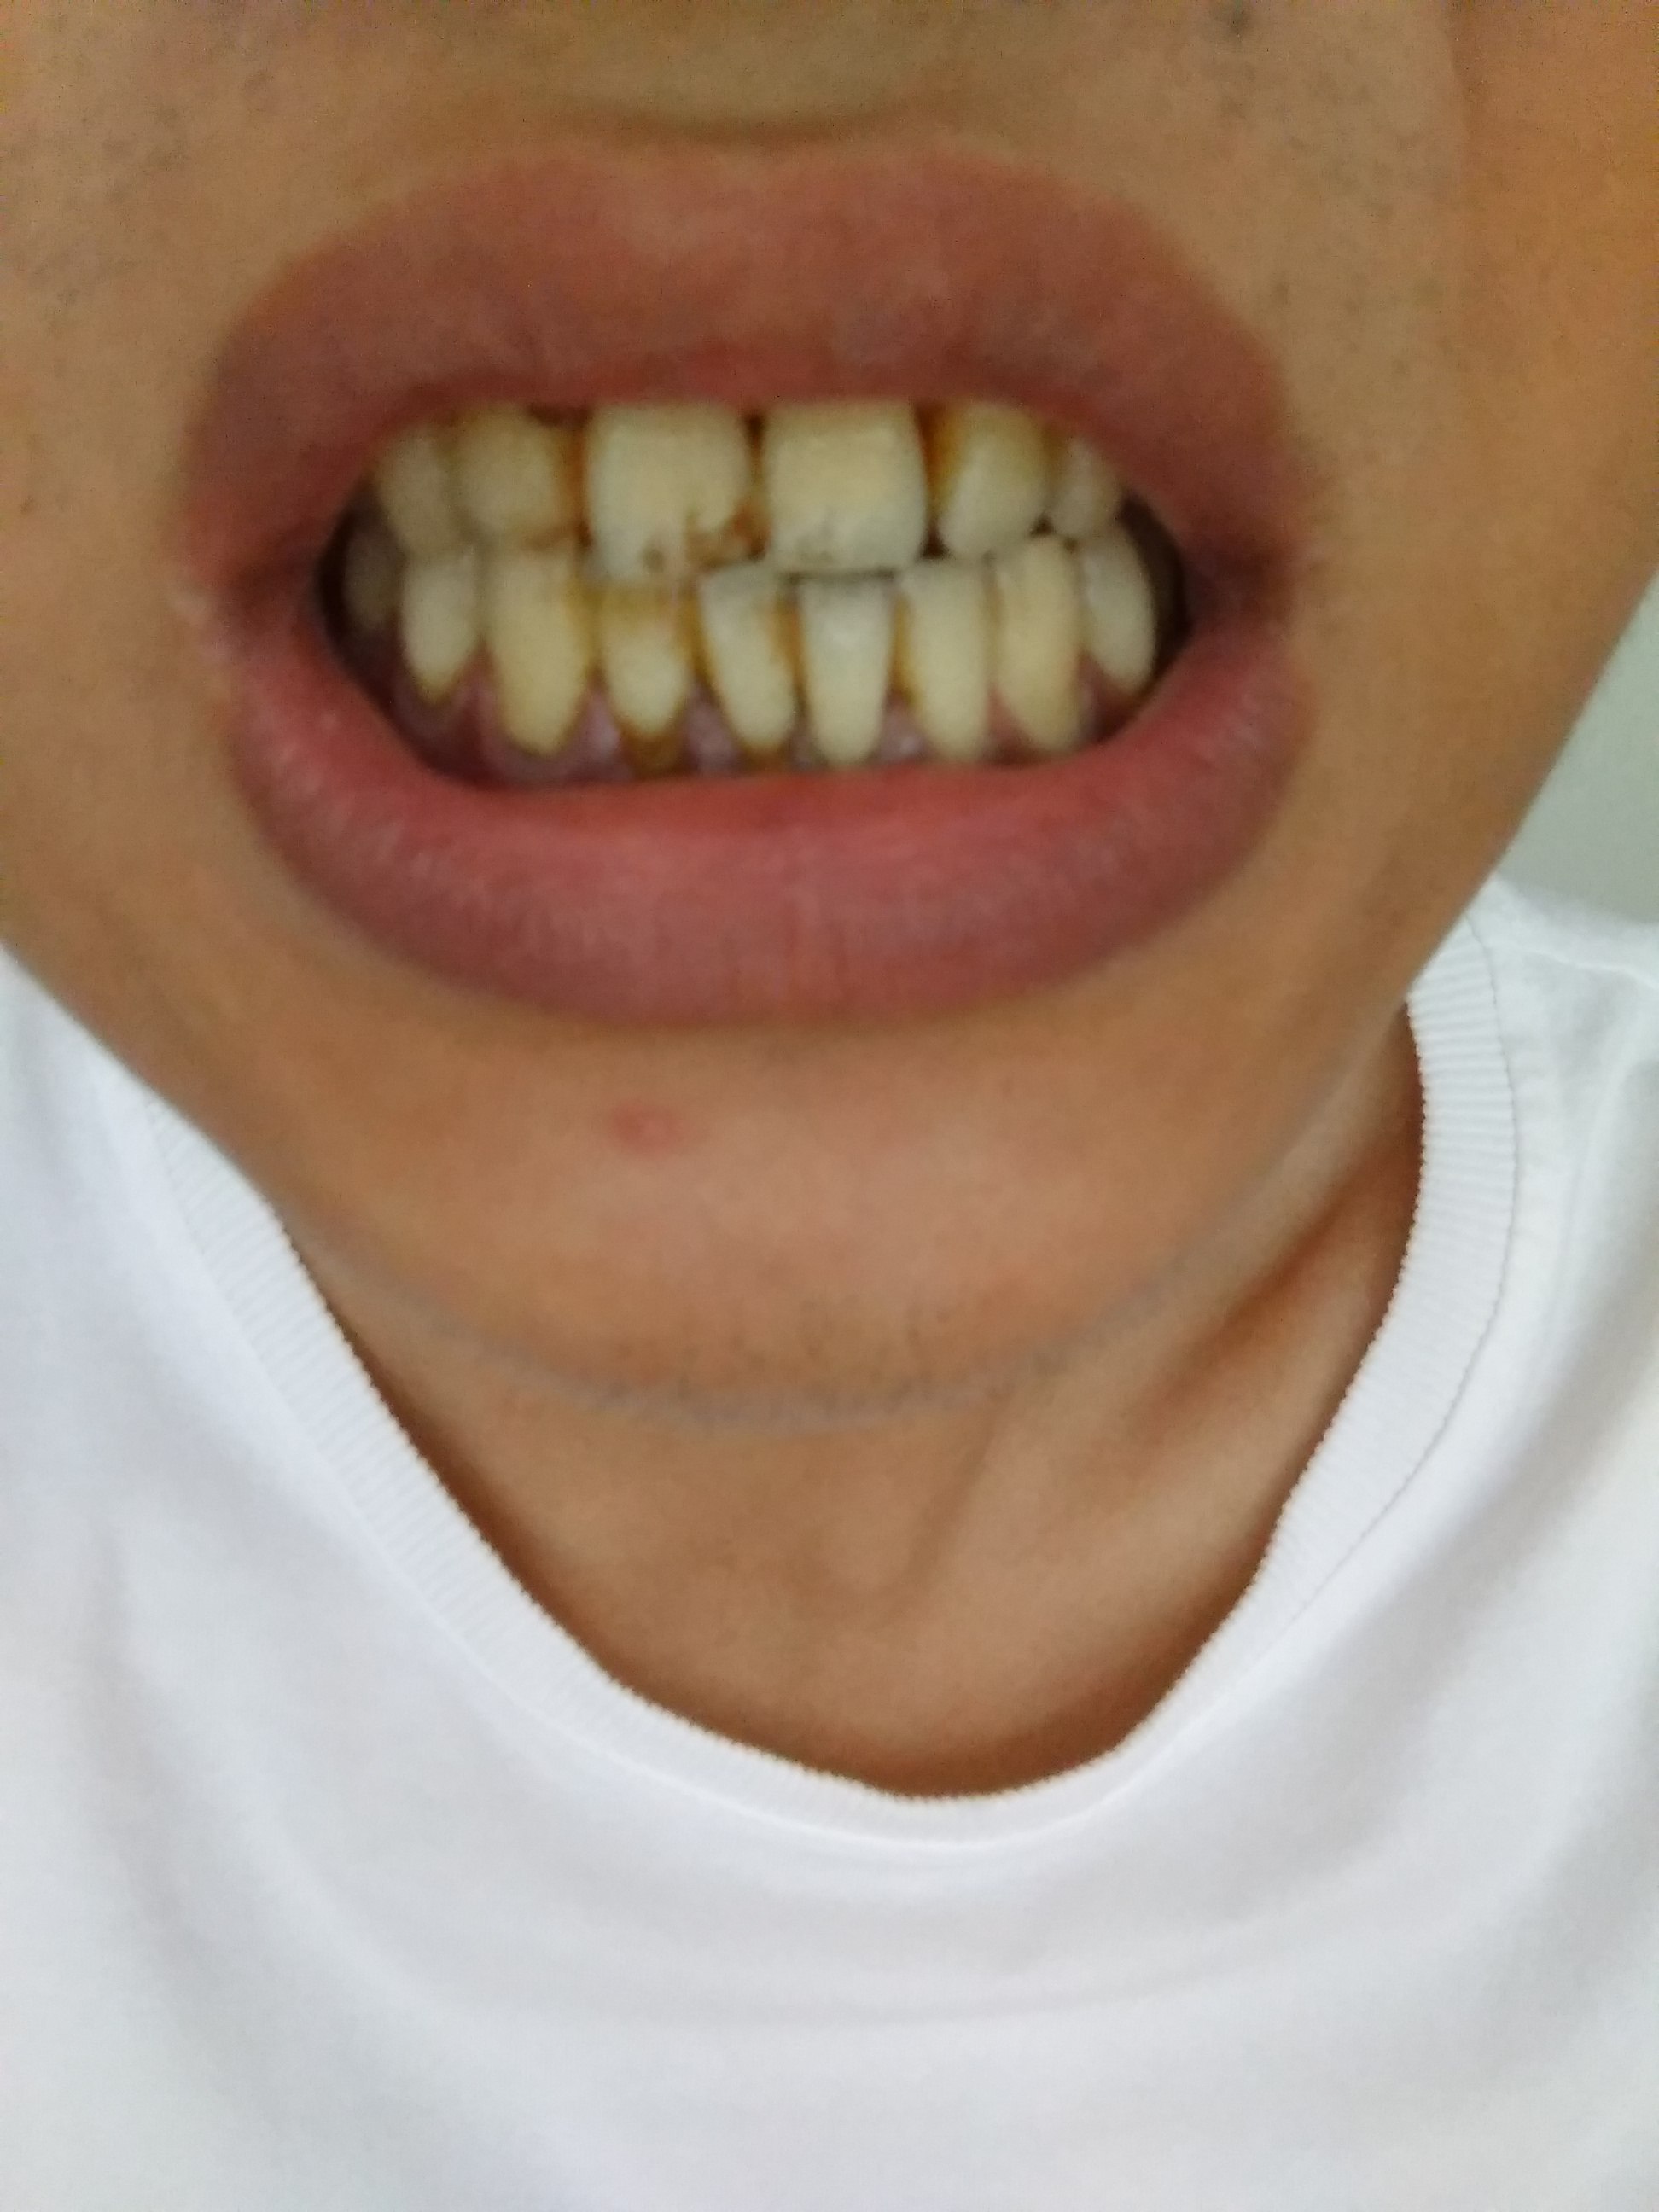 我的牙齿下方黑黑的是结石吗需要做龈下刮治吗还是单纯的洗牙就